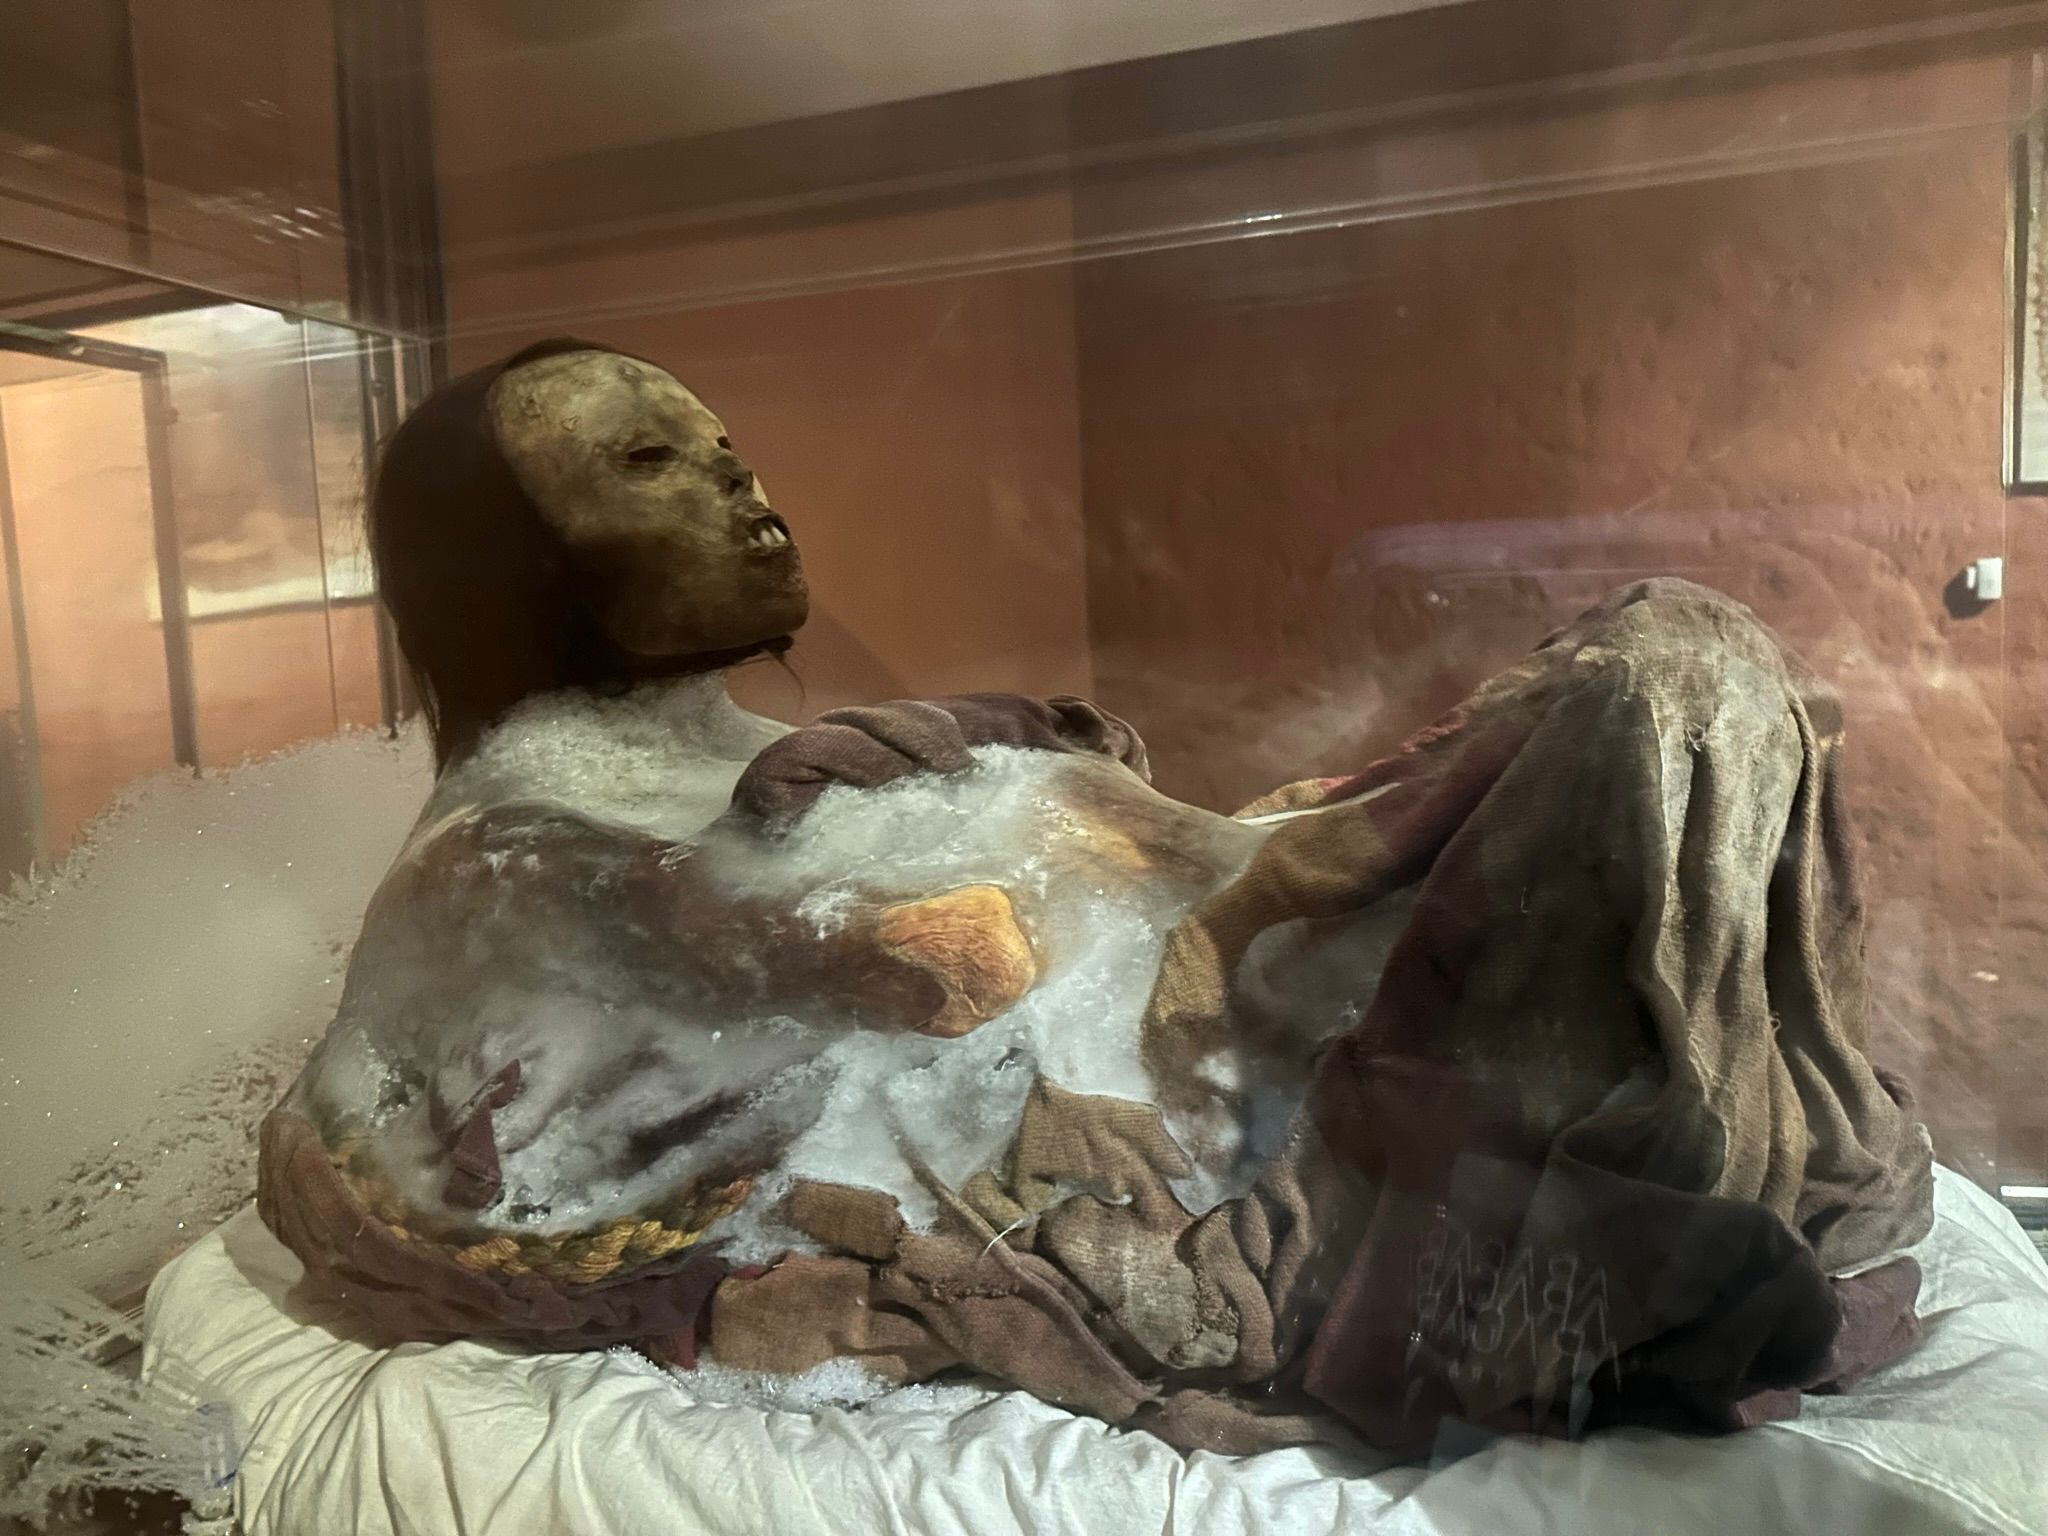 Juanita Mummy Arequipa: The Incan Ice Maiden, Aracari Travel